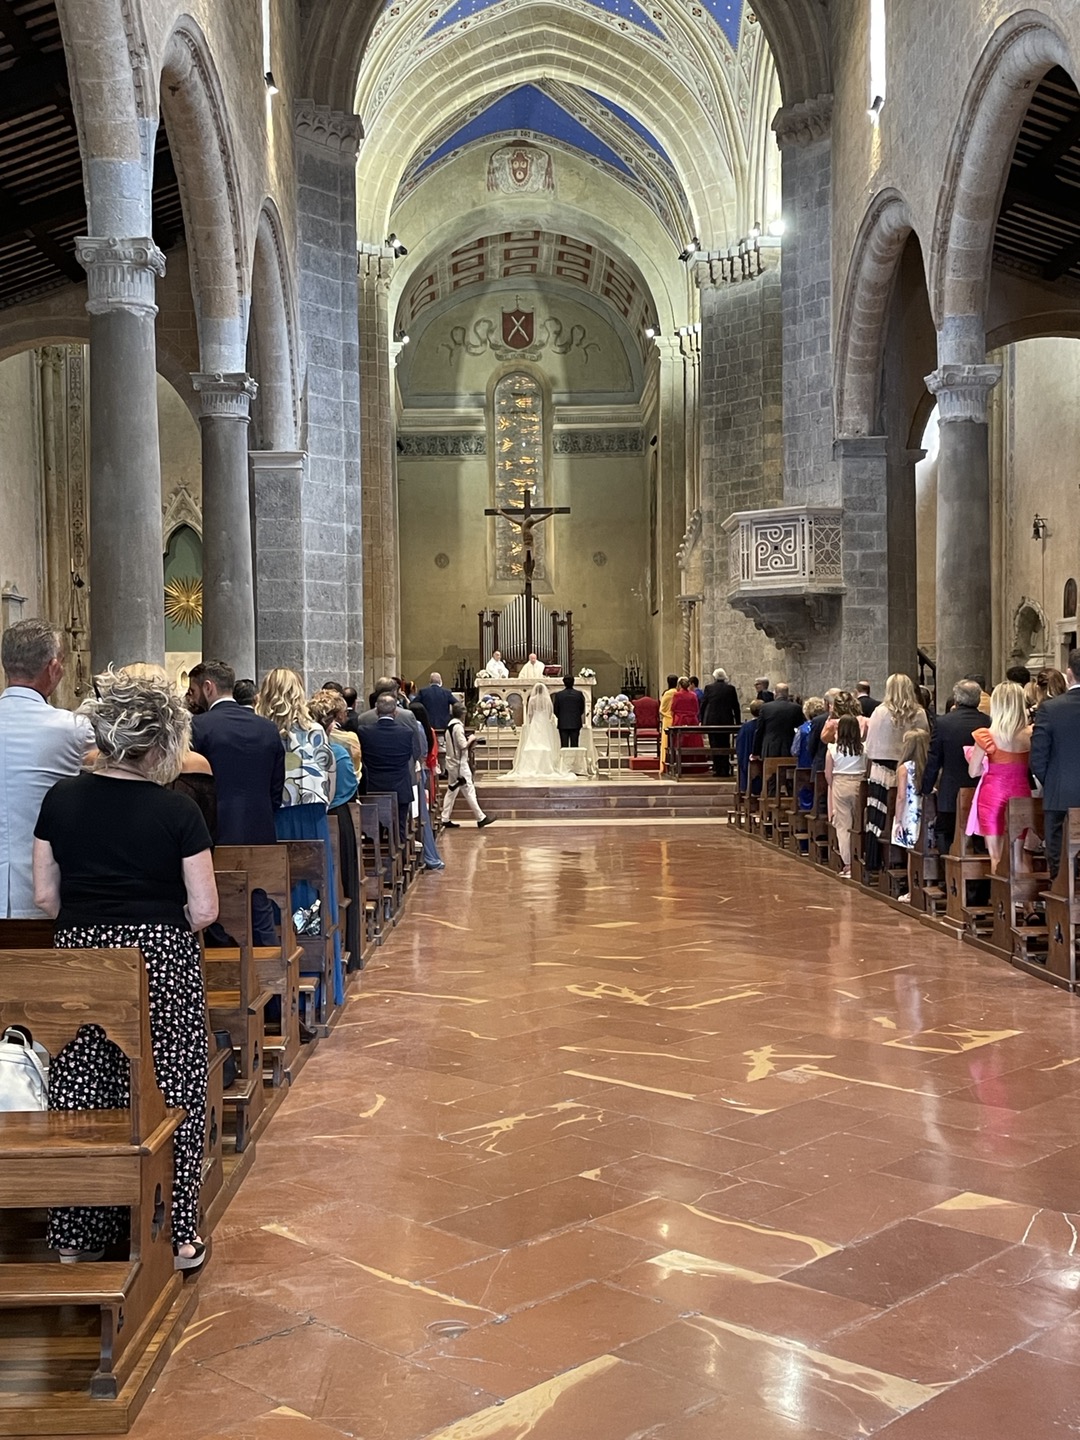 < 오르비에토(Orvieto)의 한 교회에서 진행한 전통 결혼식 - 출처: 통신원 촬영 > 